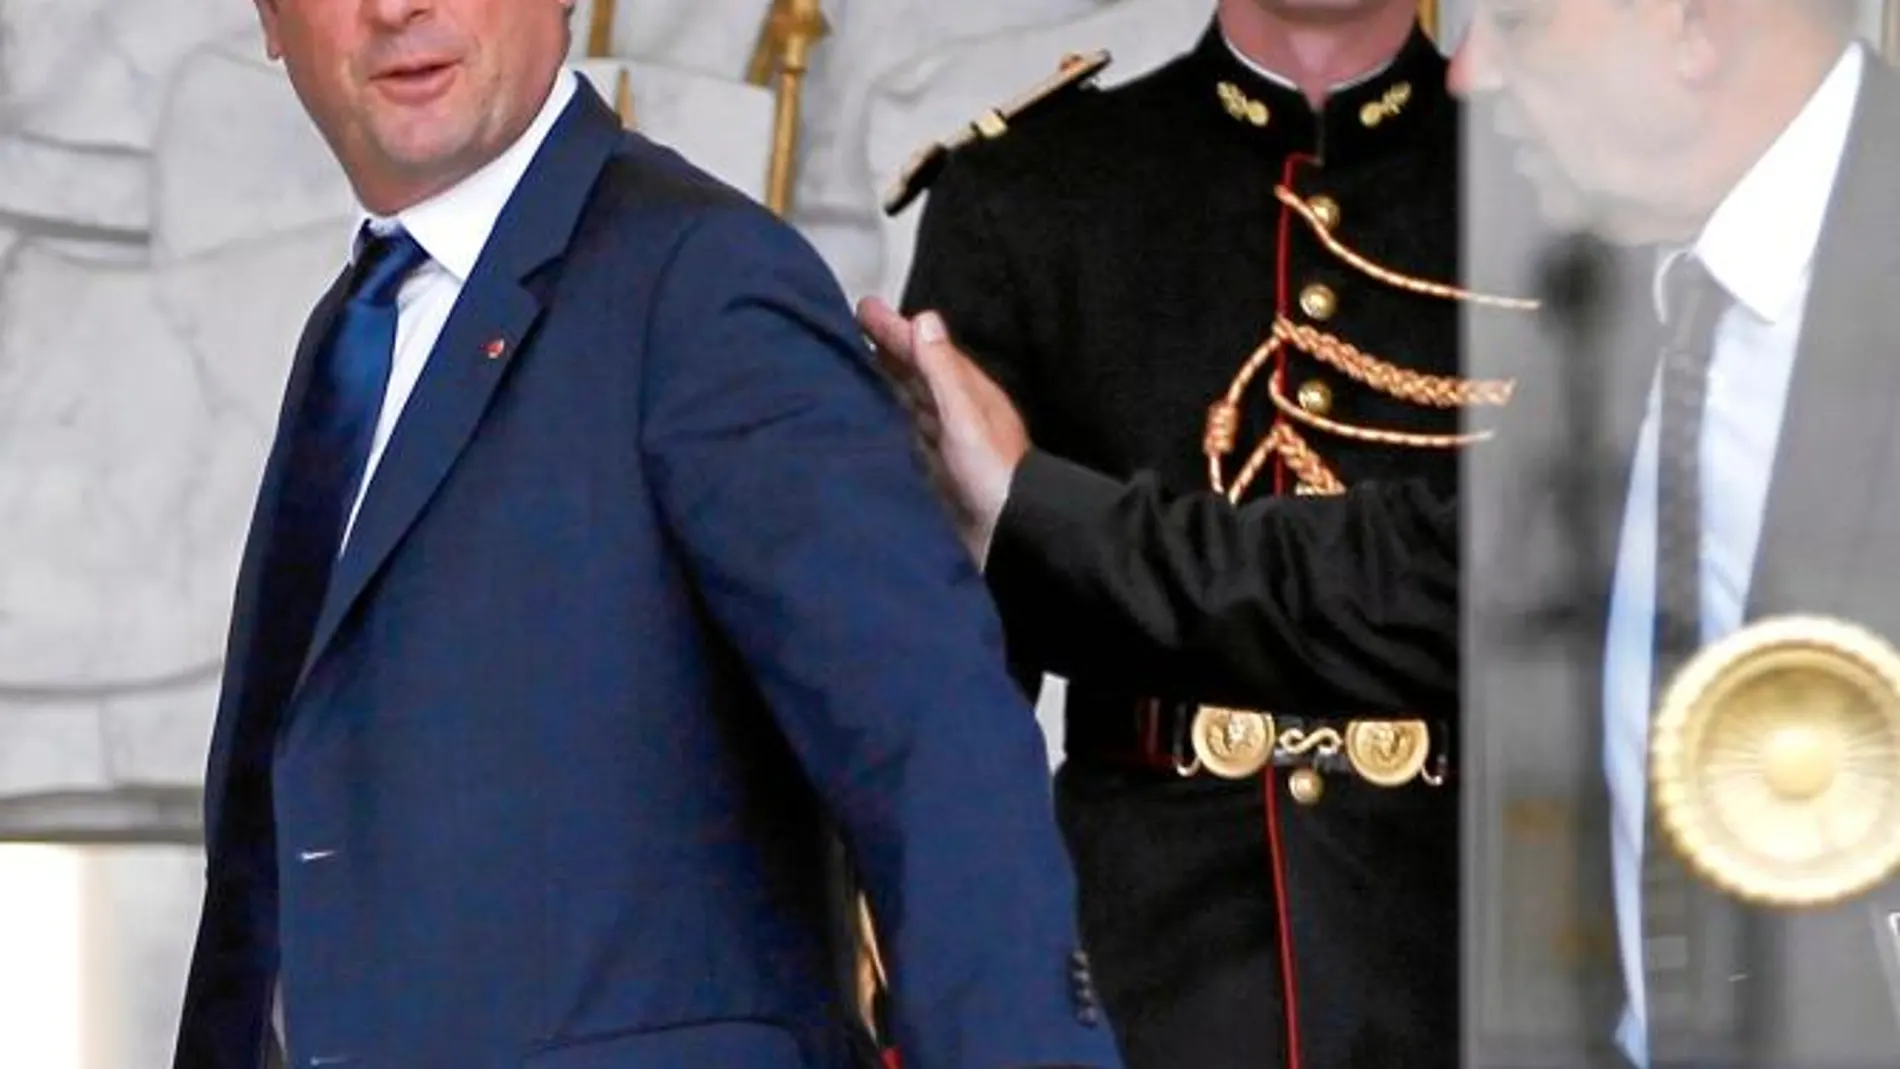 El presidente francés, el socialista François Hollande, prometió en la campaña electoral una ley para que los gays puedan casarse y adoptar